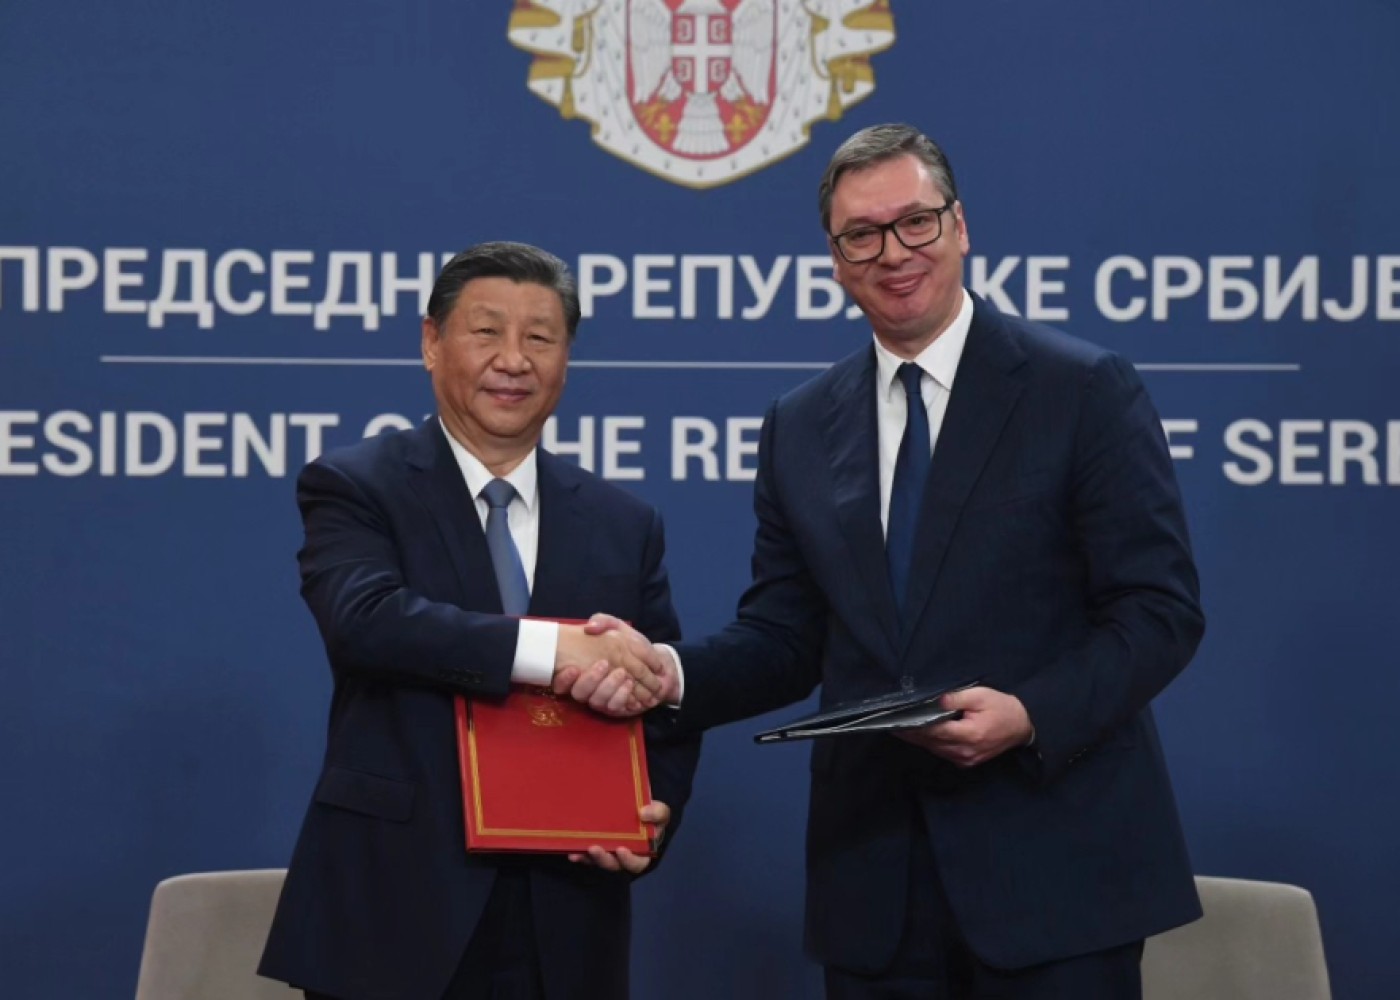 Serbiya və Çin arasında 28 sənəd imzalandı